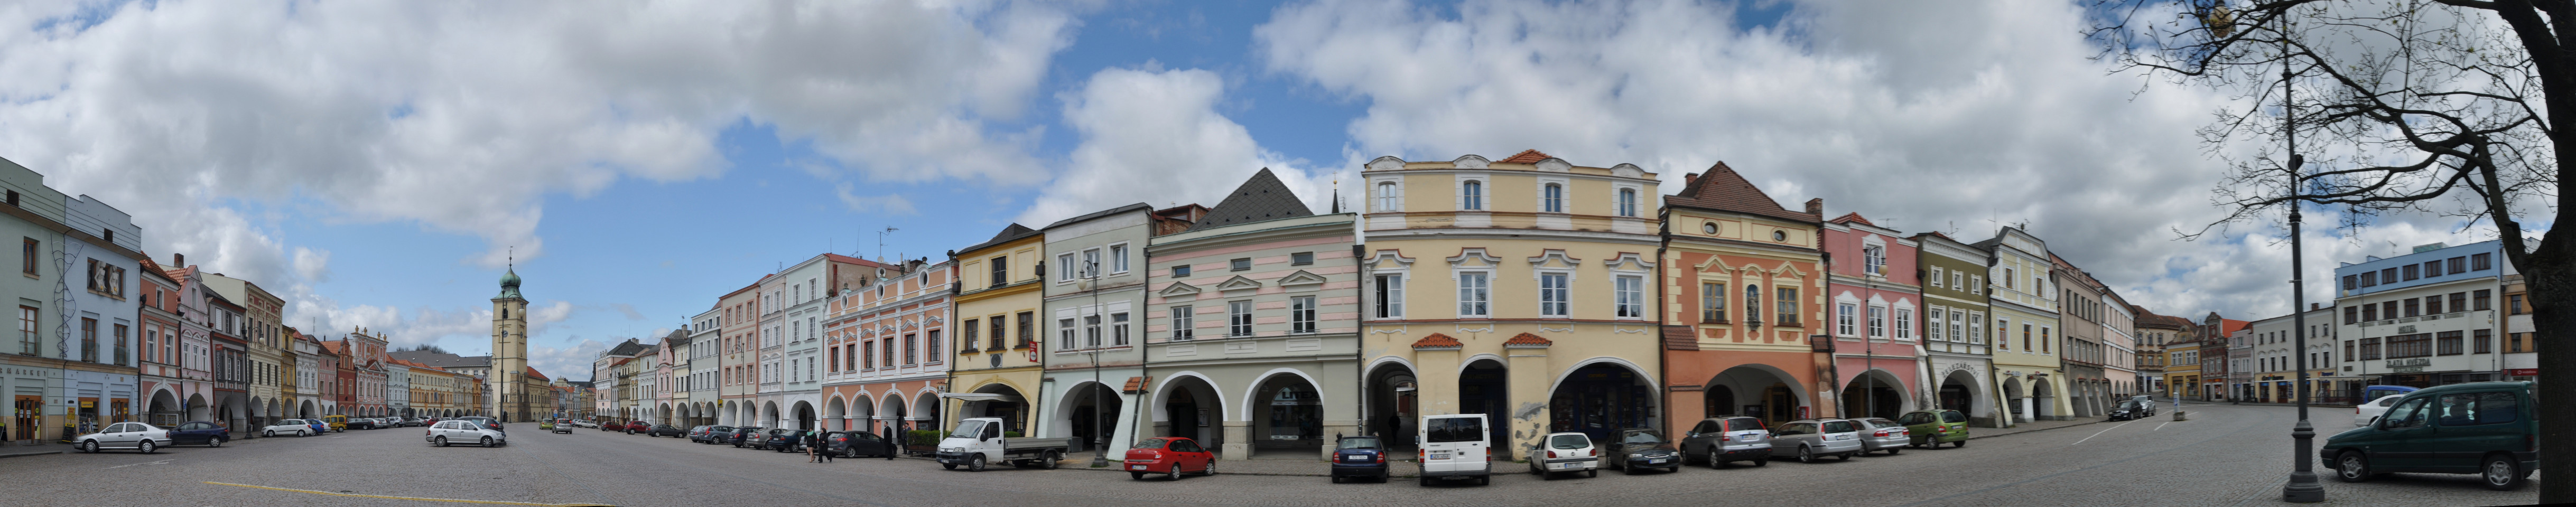 Der Marktplatz von Litomyšl